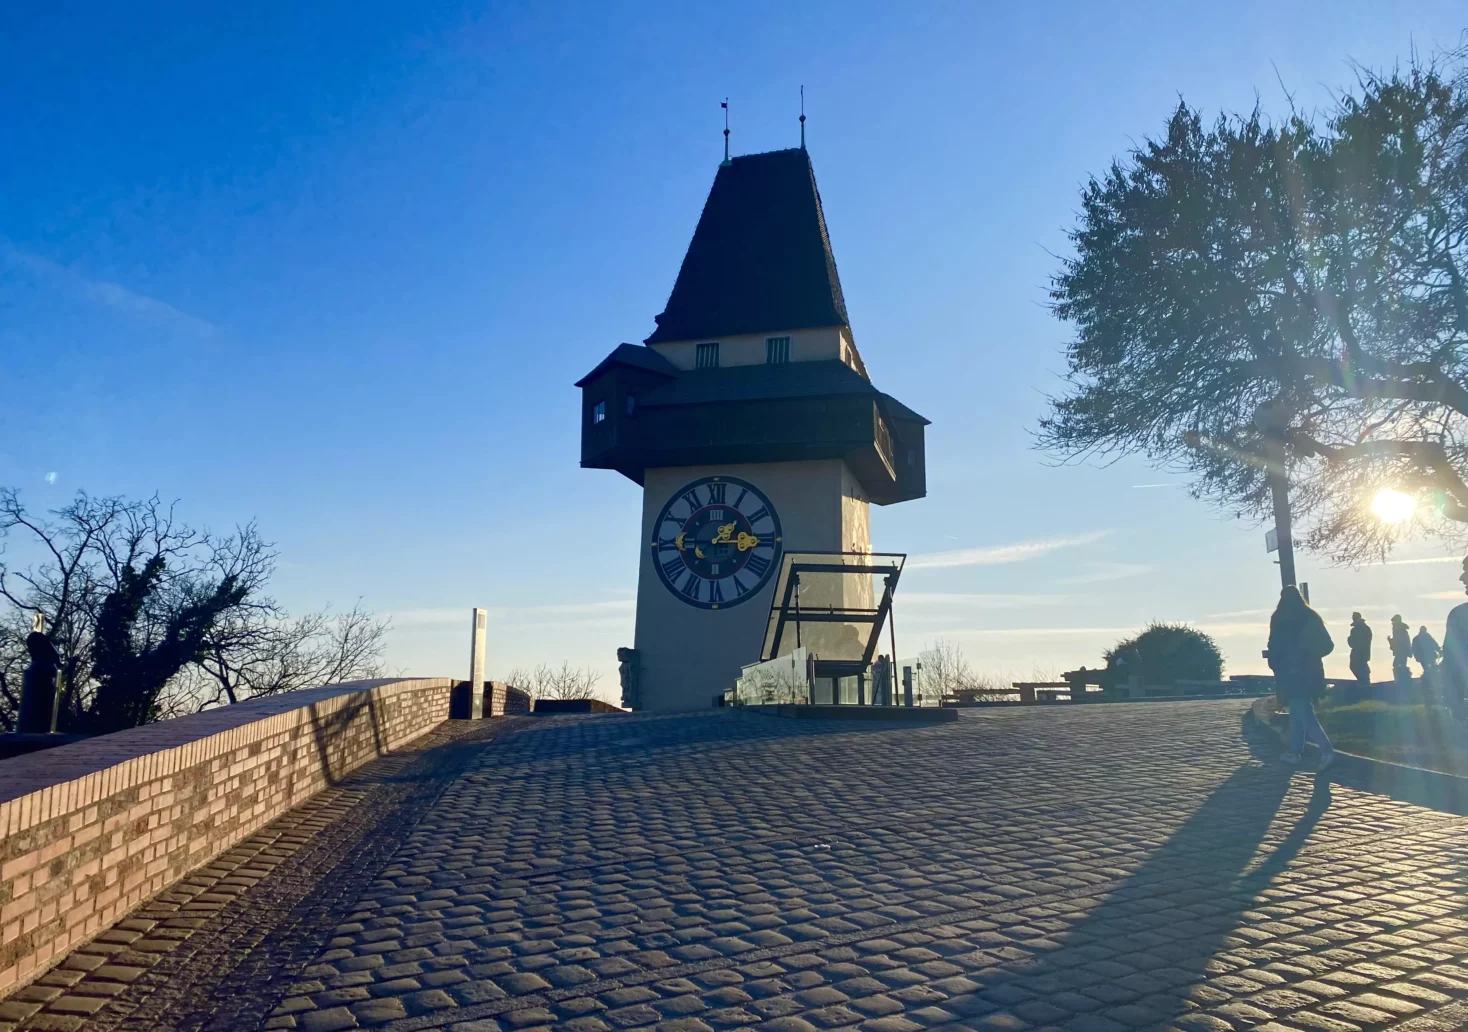 Foto auf 5min.at zeigt den Uhrturm in Graz bei sonnigem Wetter.